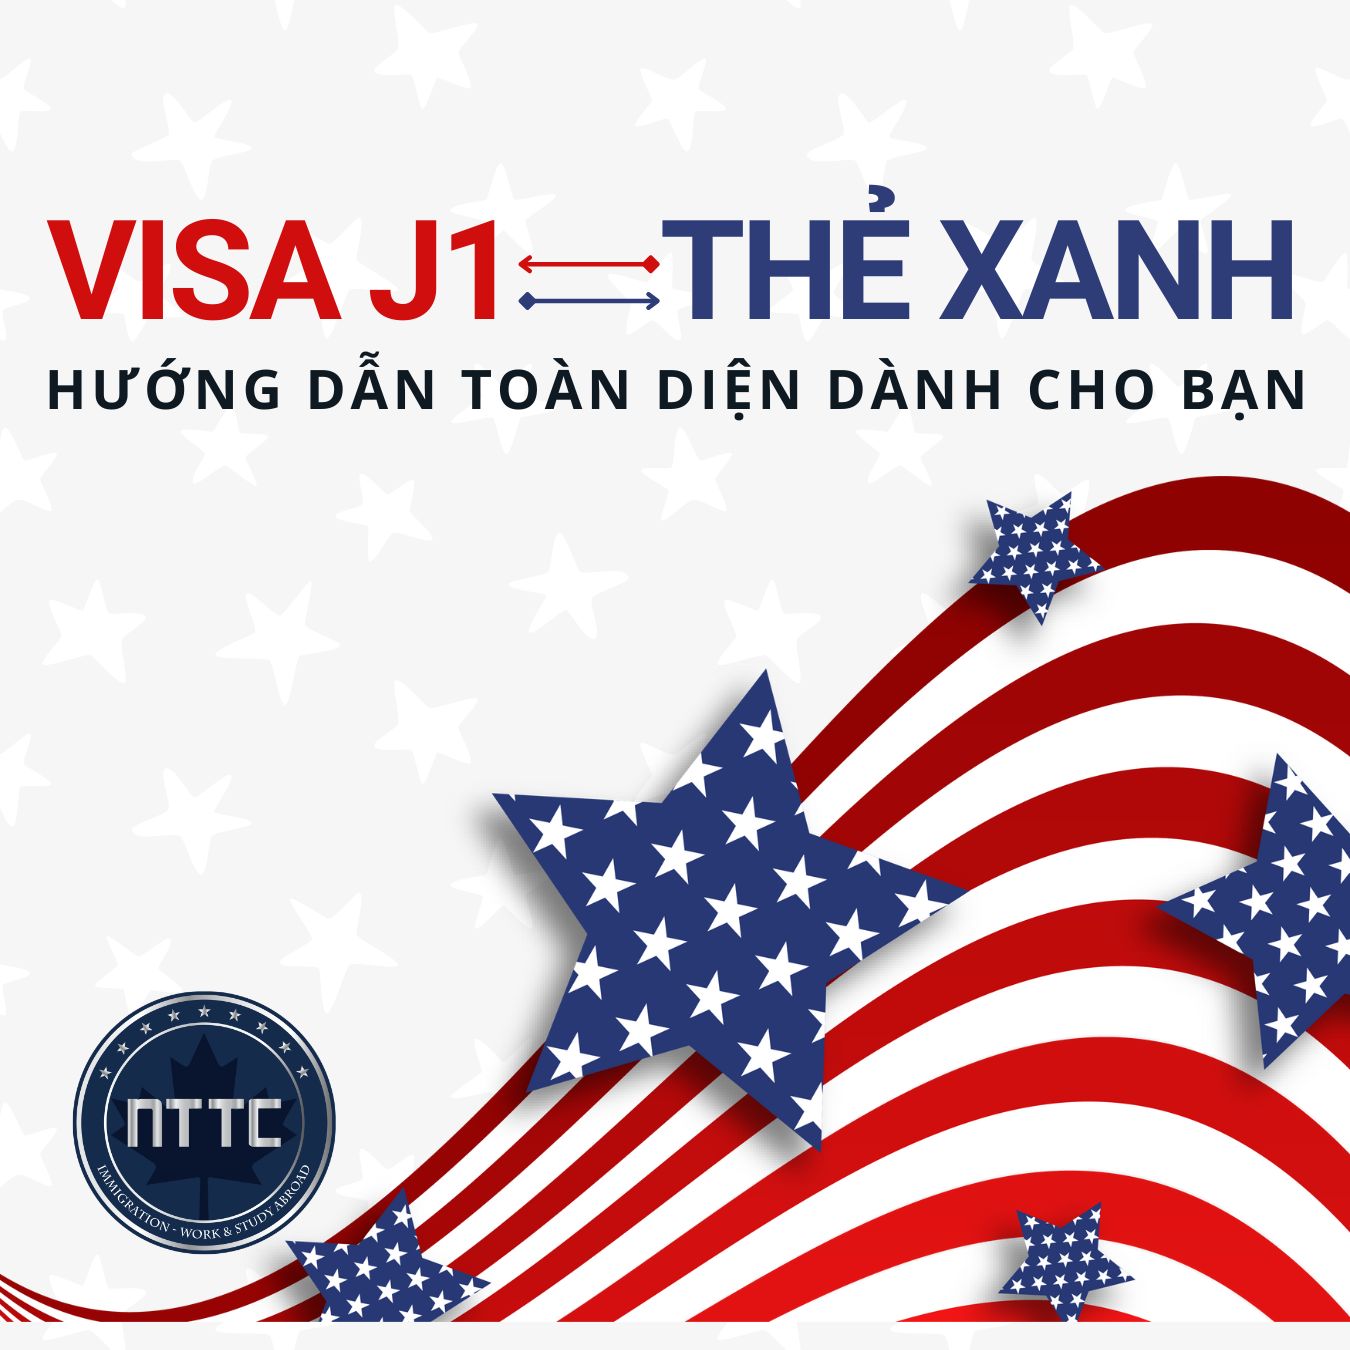 Hướng dẫn cách chuyển từ visa J1 sang thẻ xanh (MỚI NHẤT)